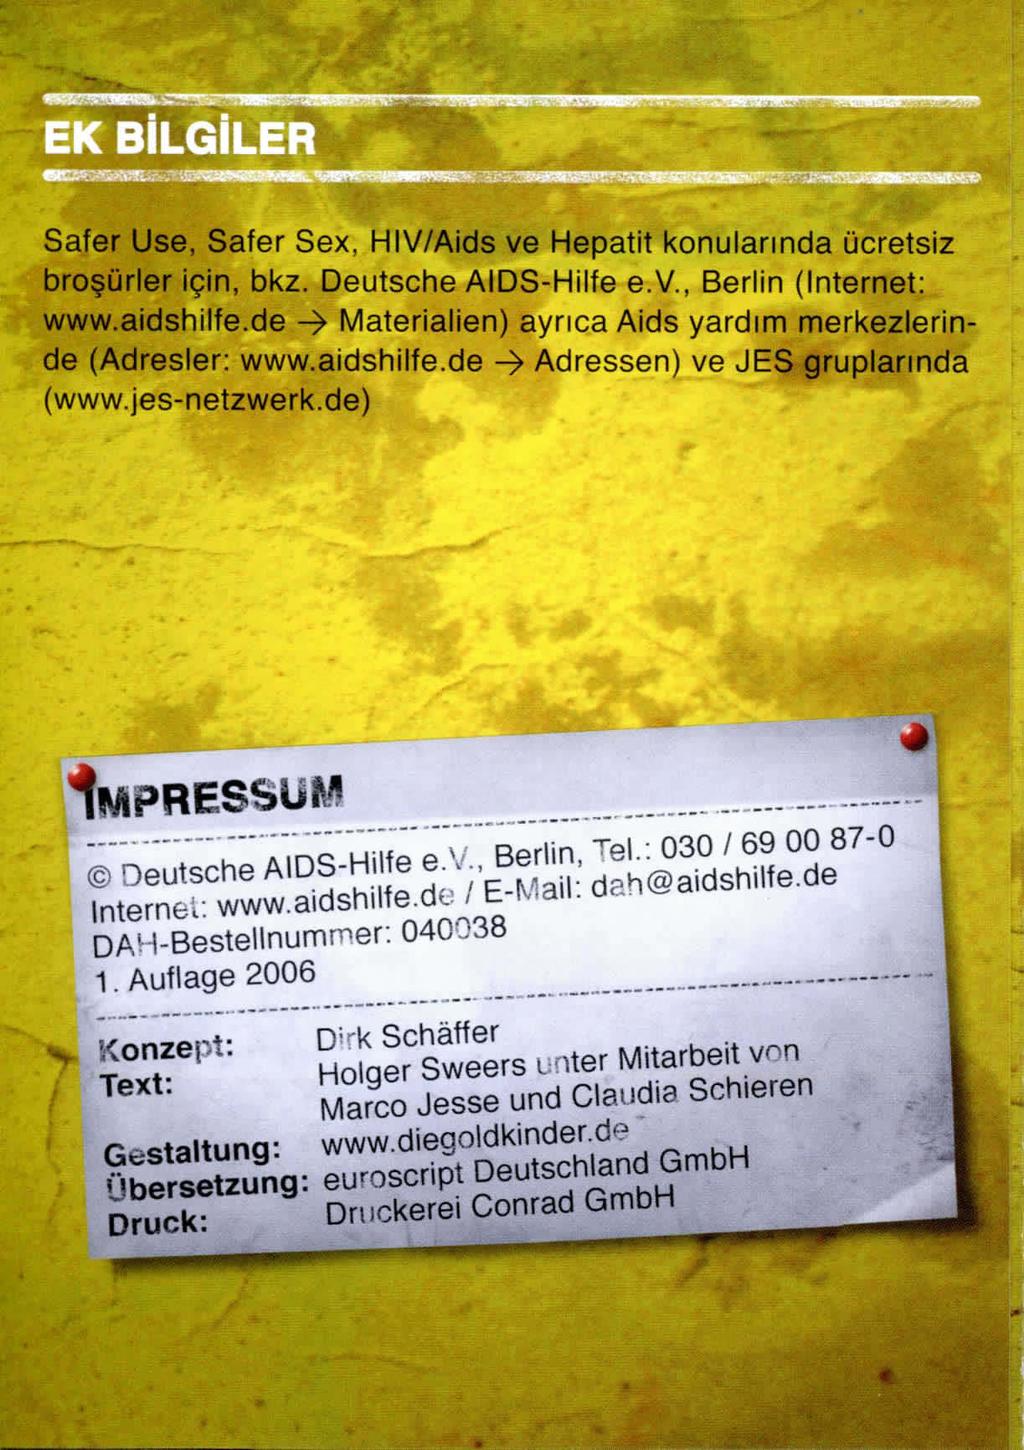 Safer Use, Safer Sex, HIV/Aids ve Hepatit konularında ücretsiz broşürler için, bkz. Deutsche AIDS-Hilfe e.v., Berlin (Internet: www.aidshilfe.